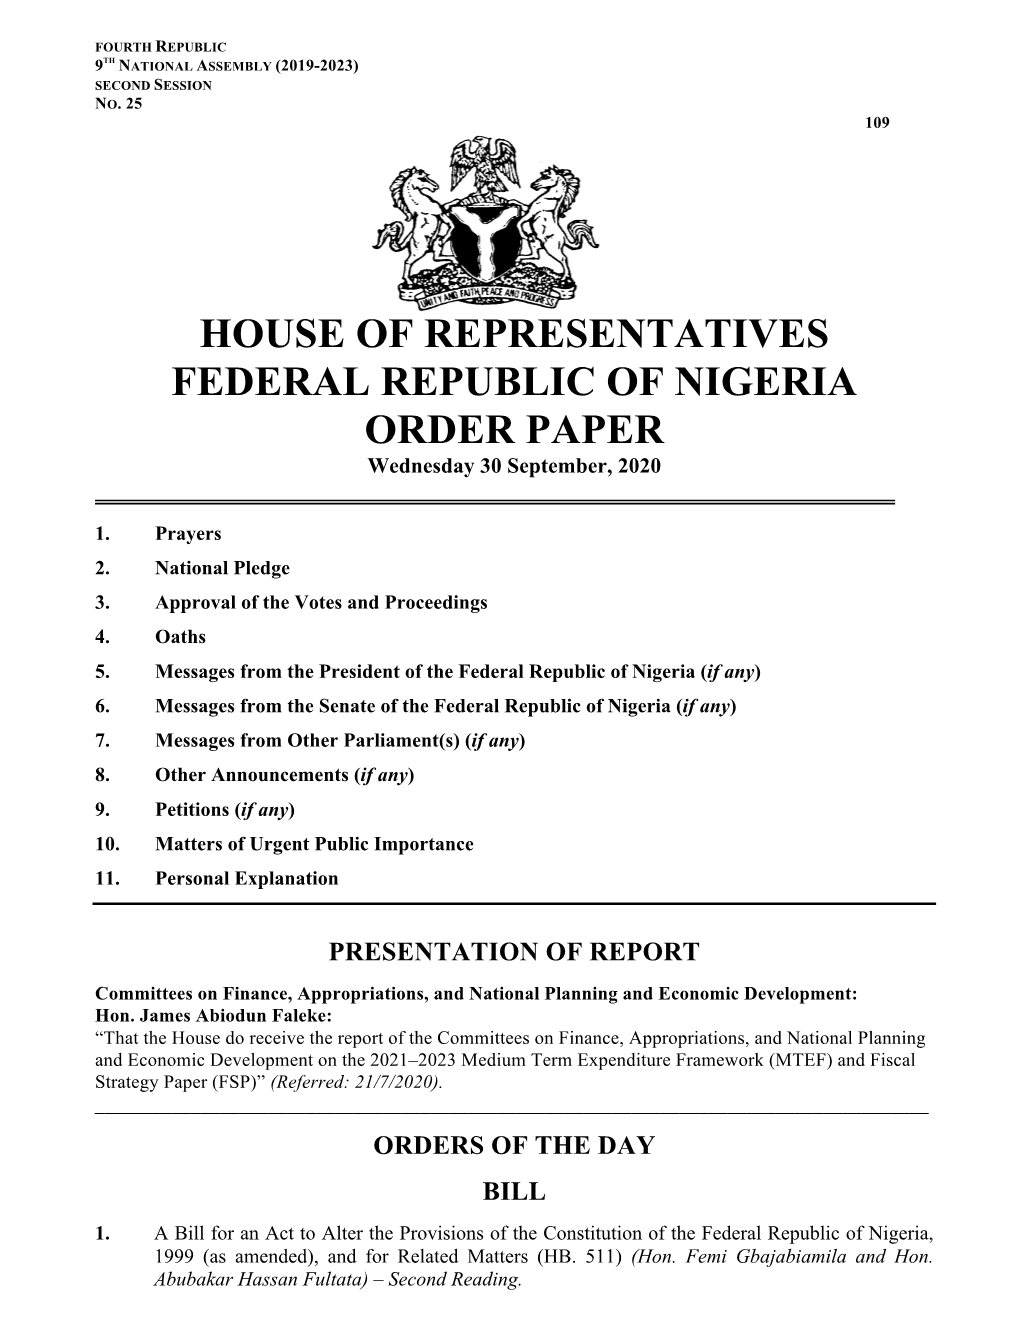 House Order Paper 30 September, 2020